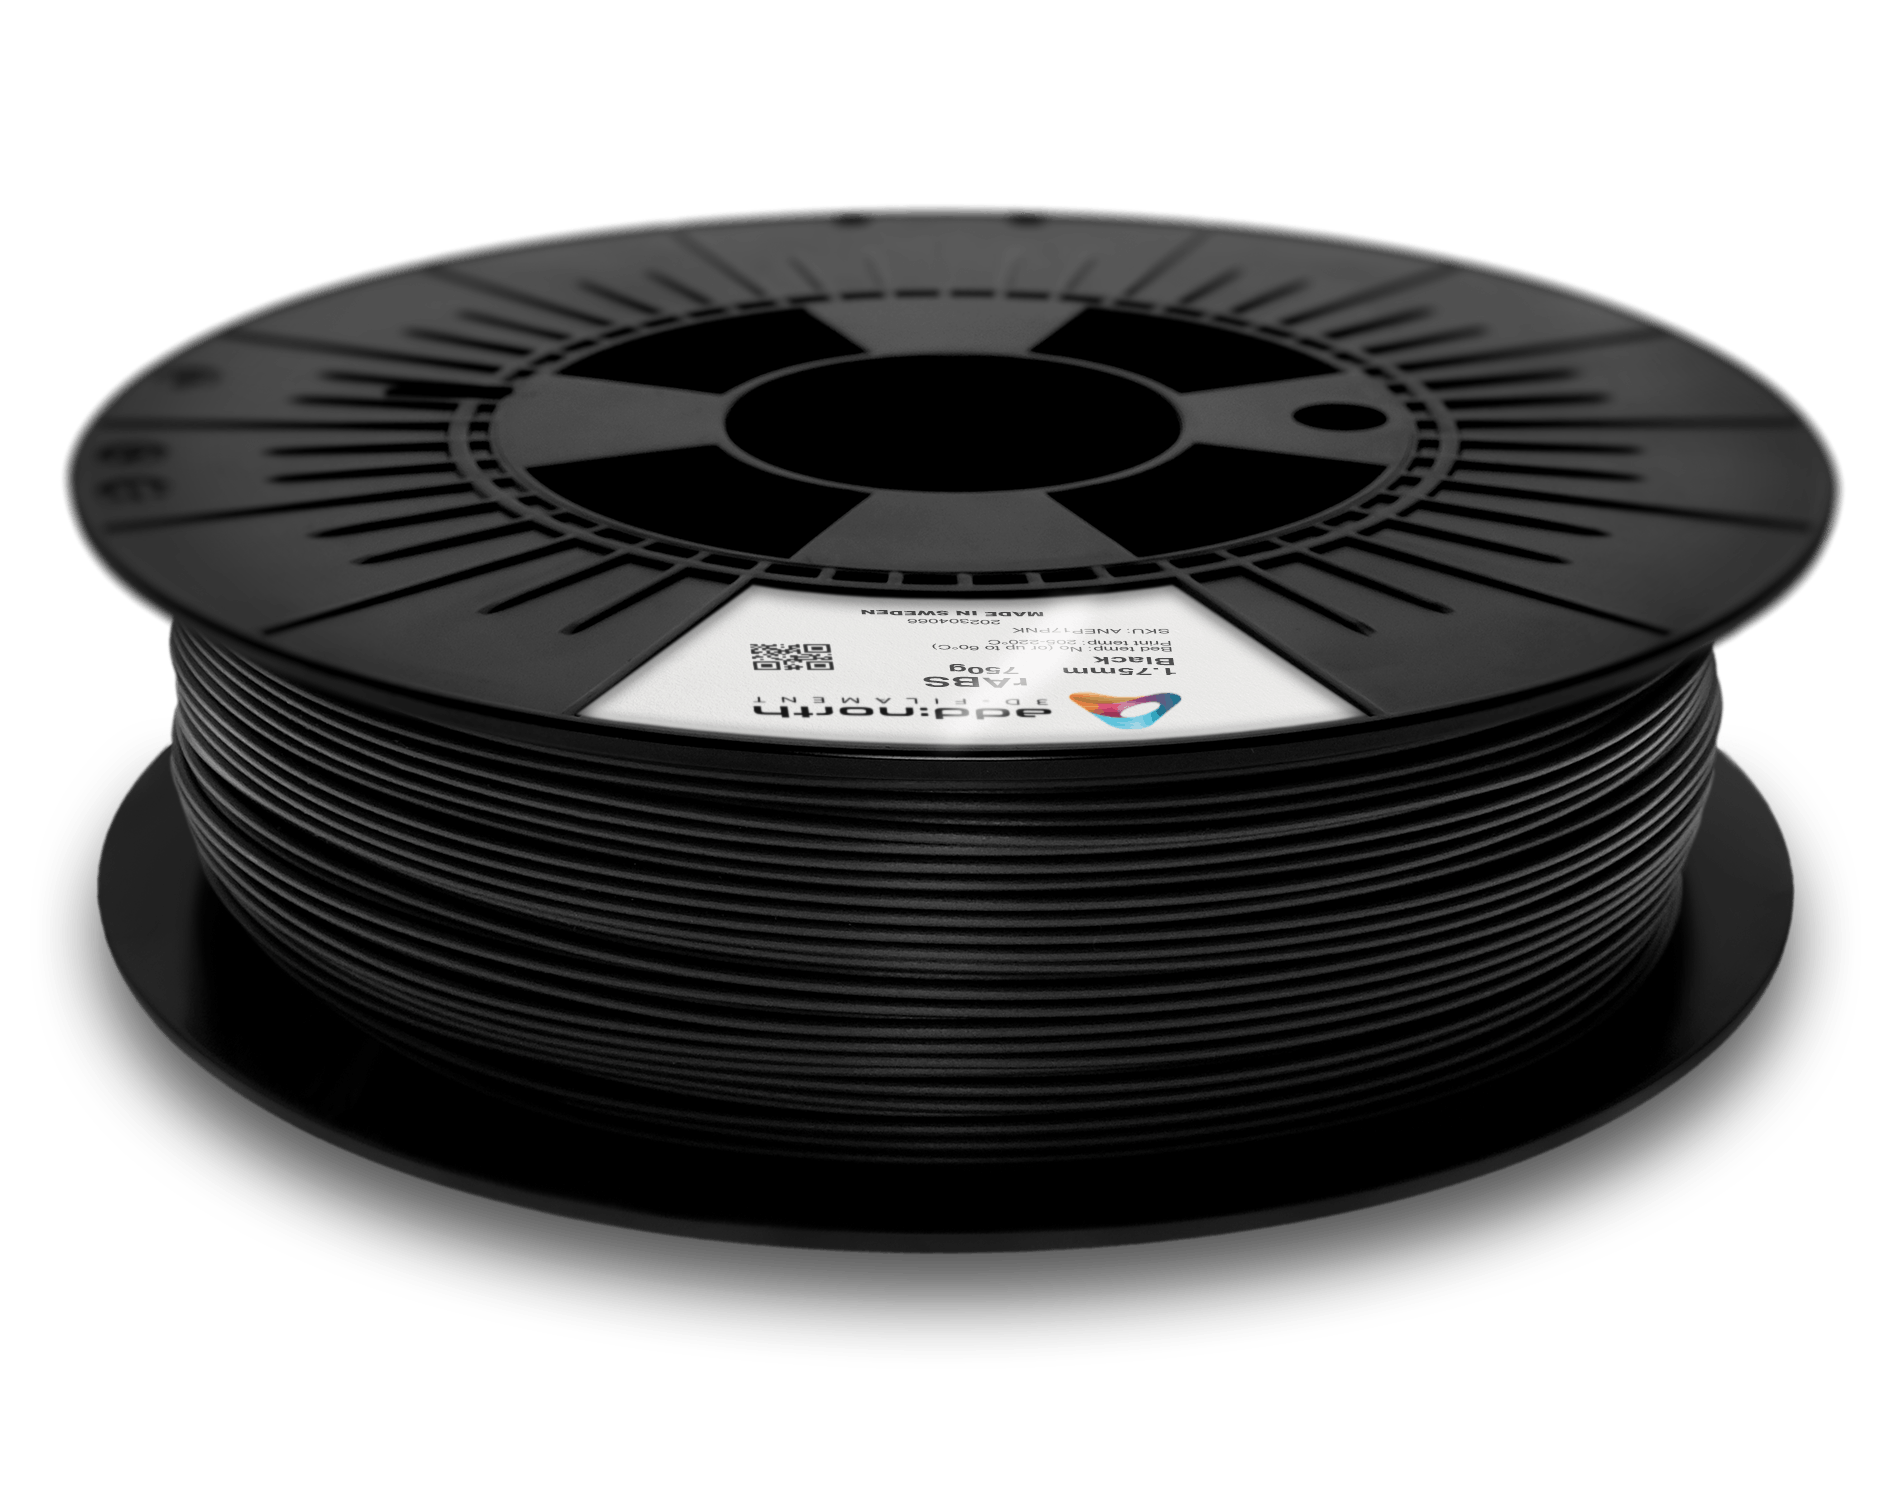 Black Fireproof ABS 3D Printer 1.75mm Filament